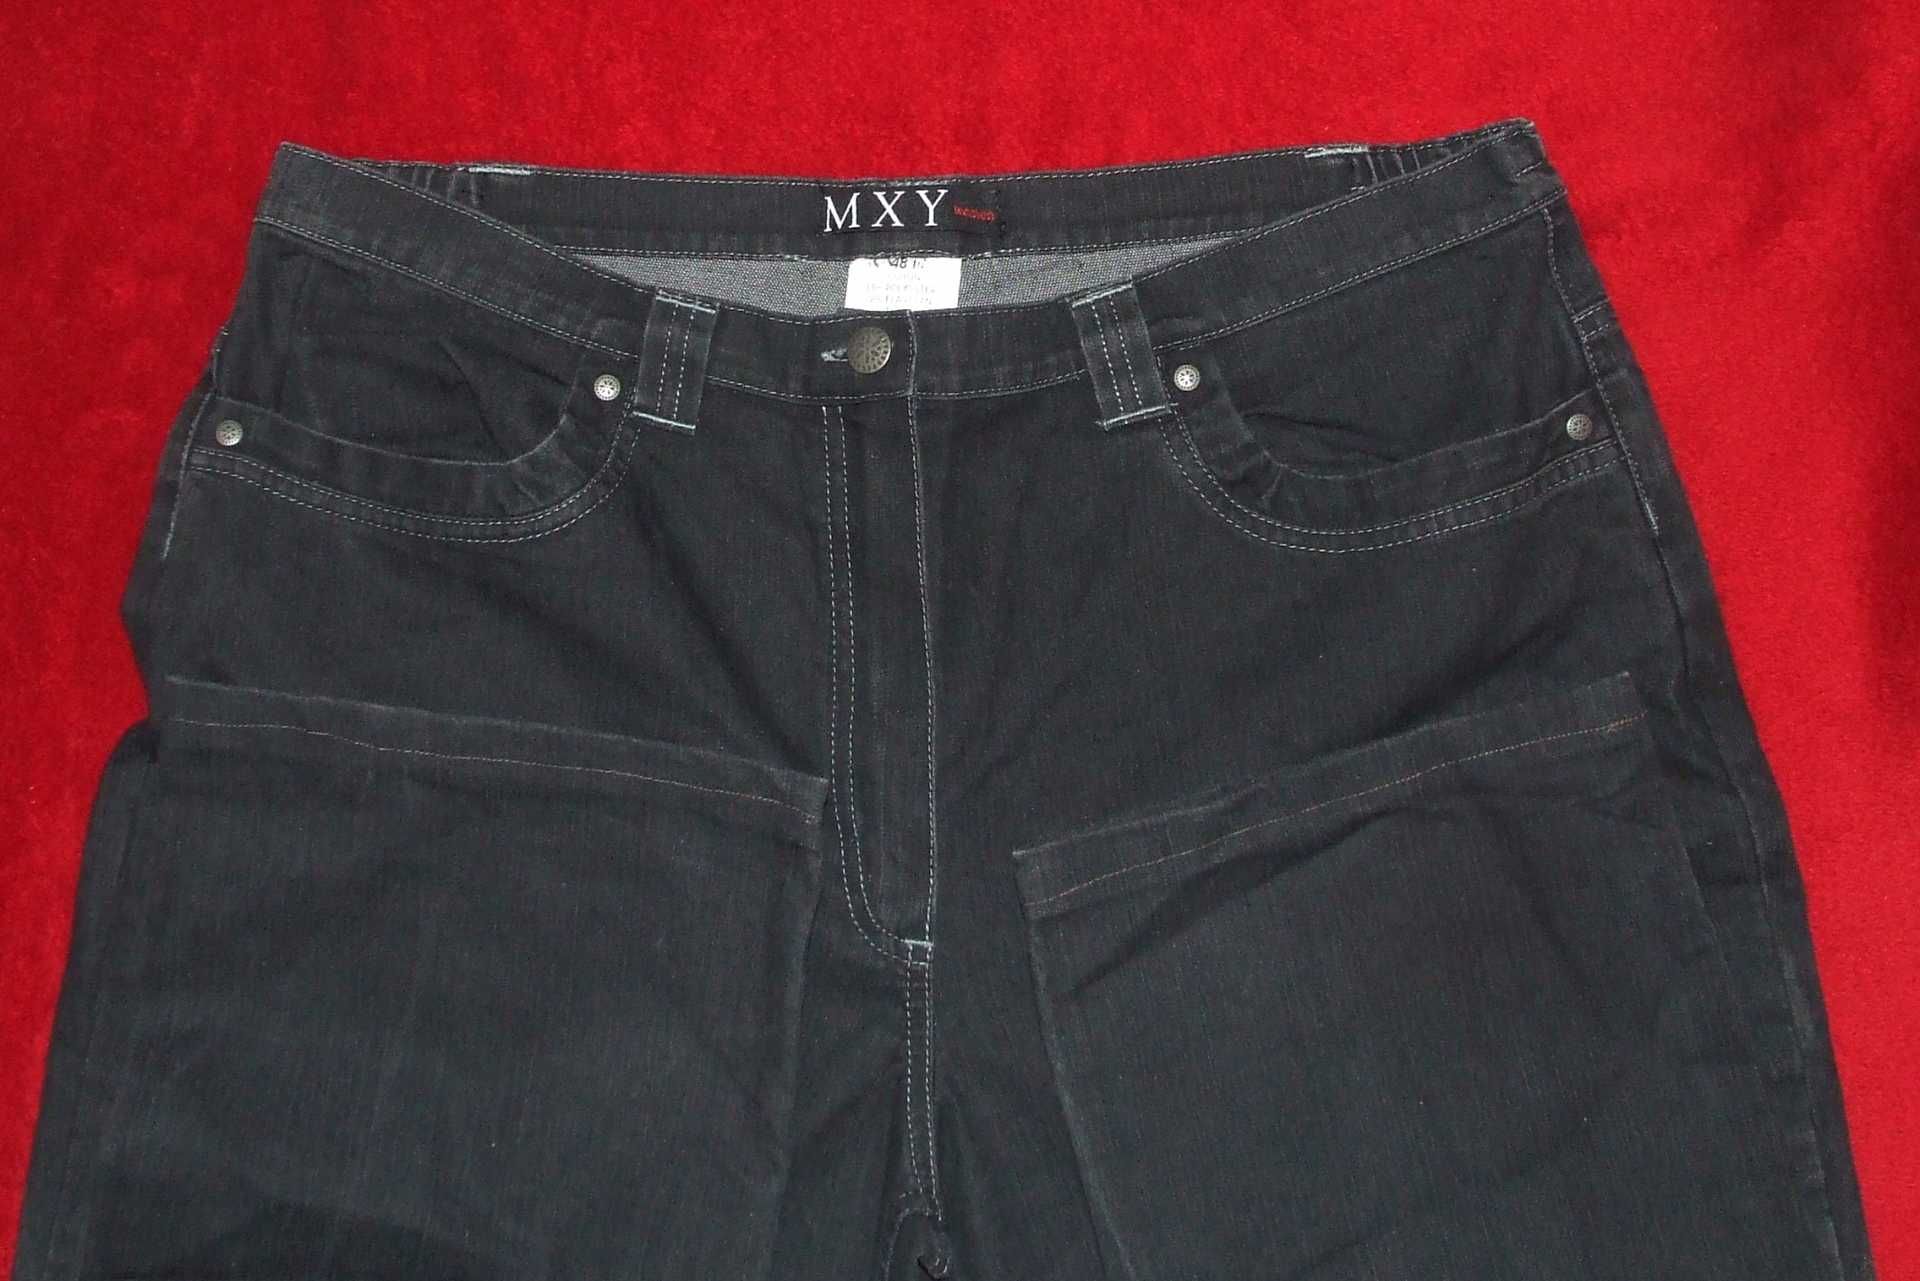 Dla puszystej spodnie damskie pas: 45 -47 cm gumka r48 czarne MXY